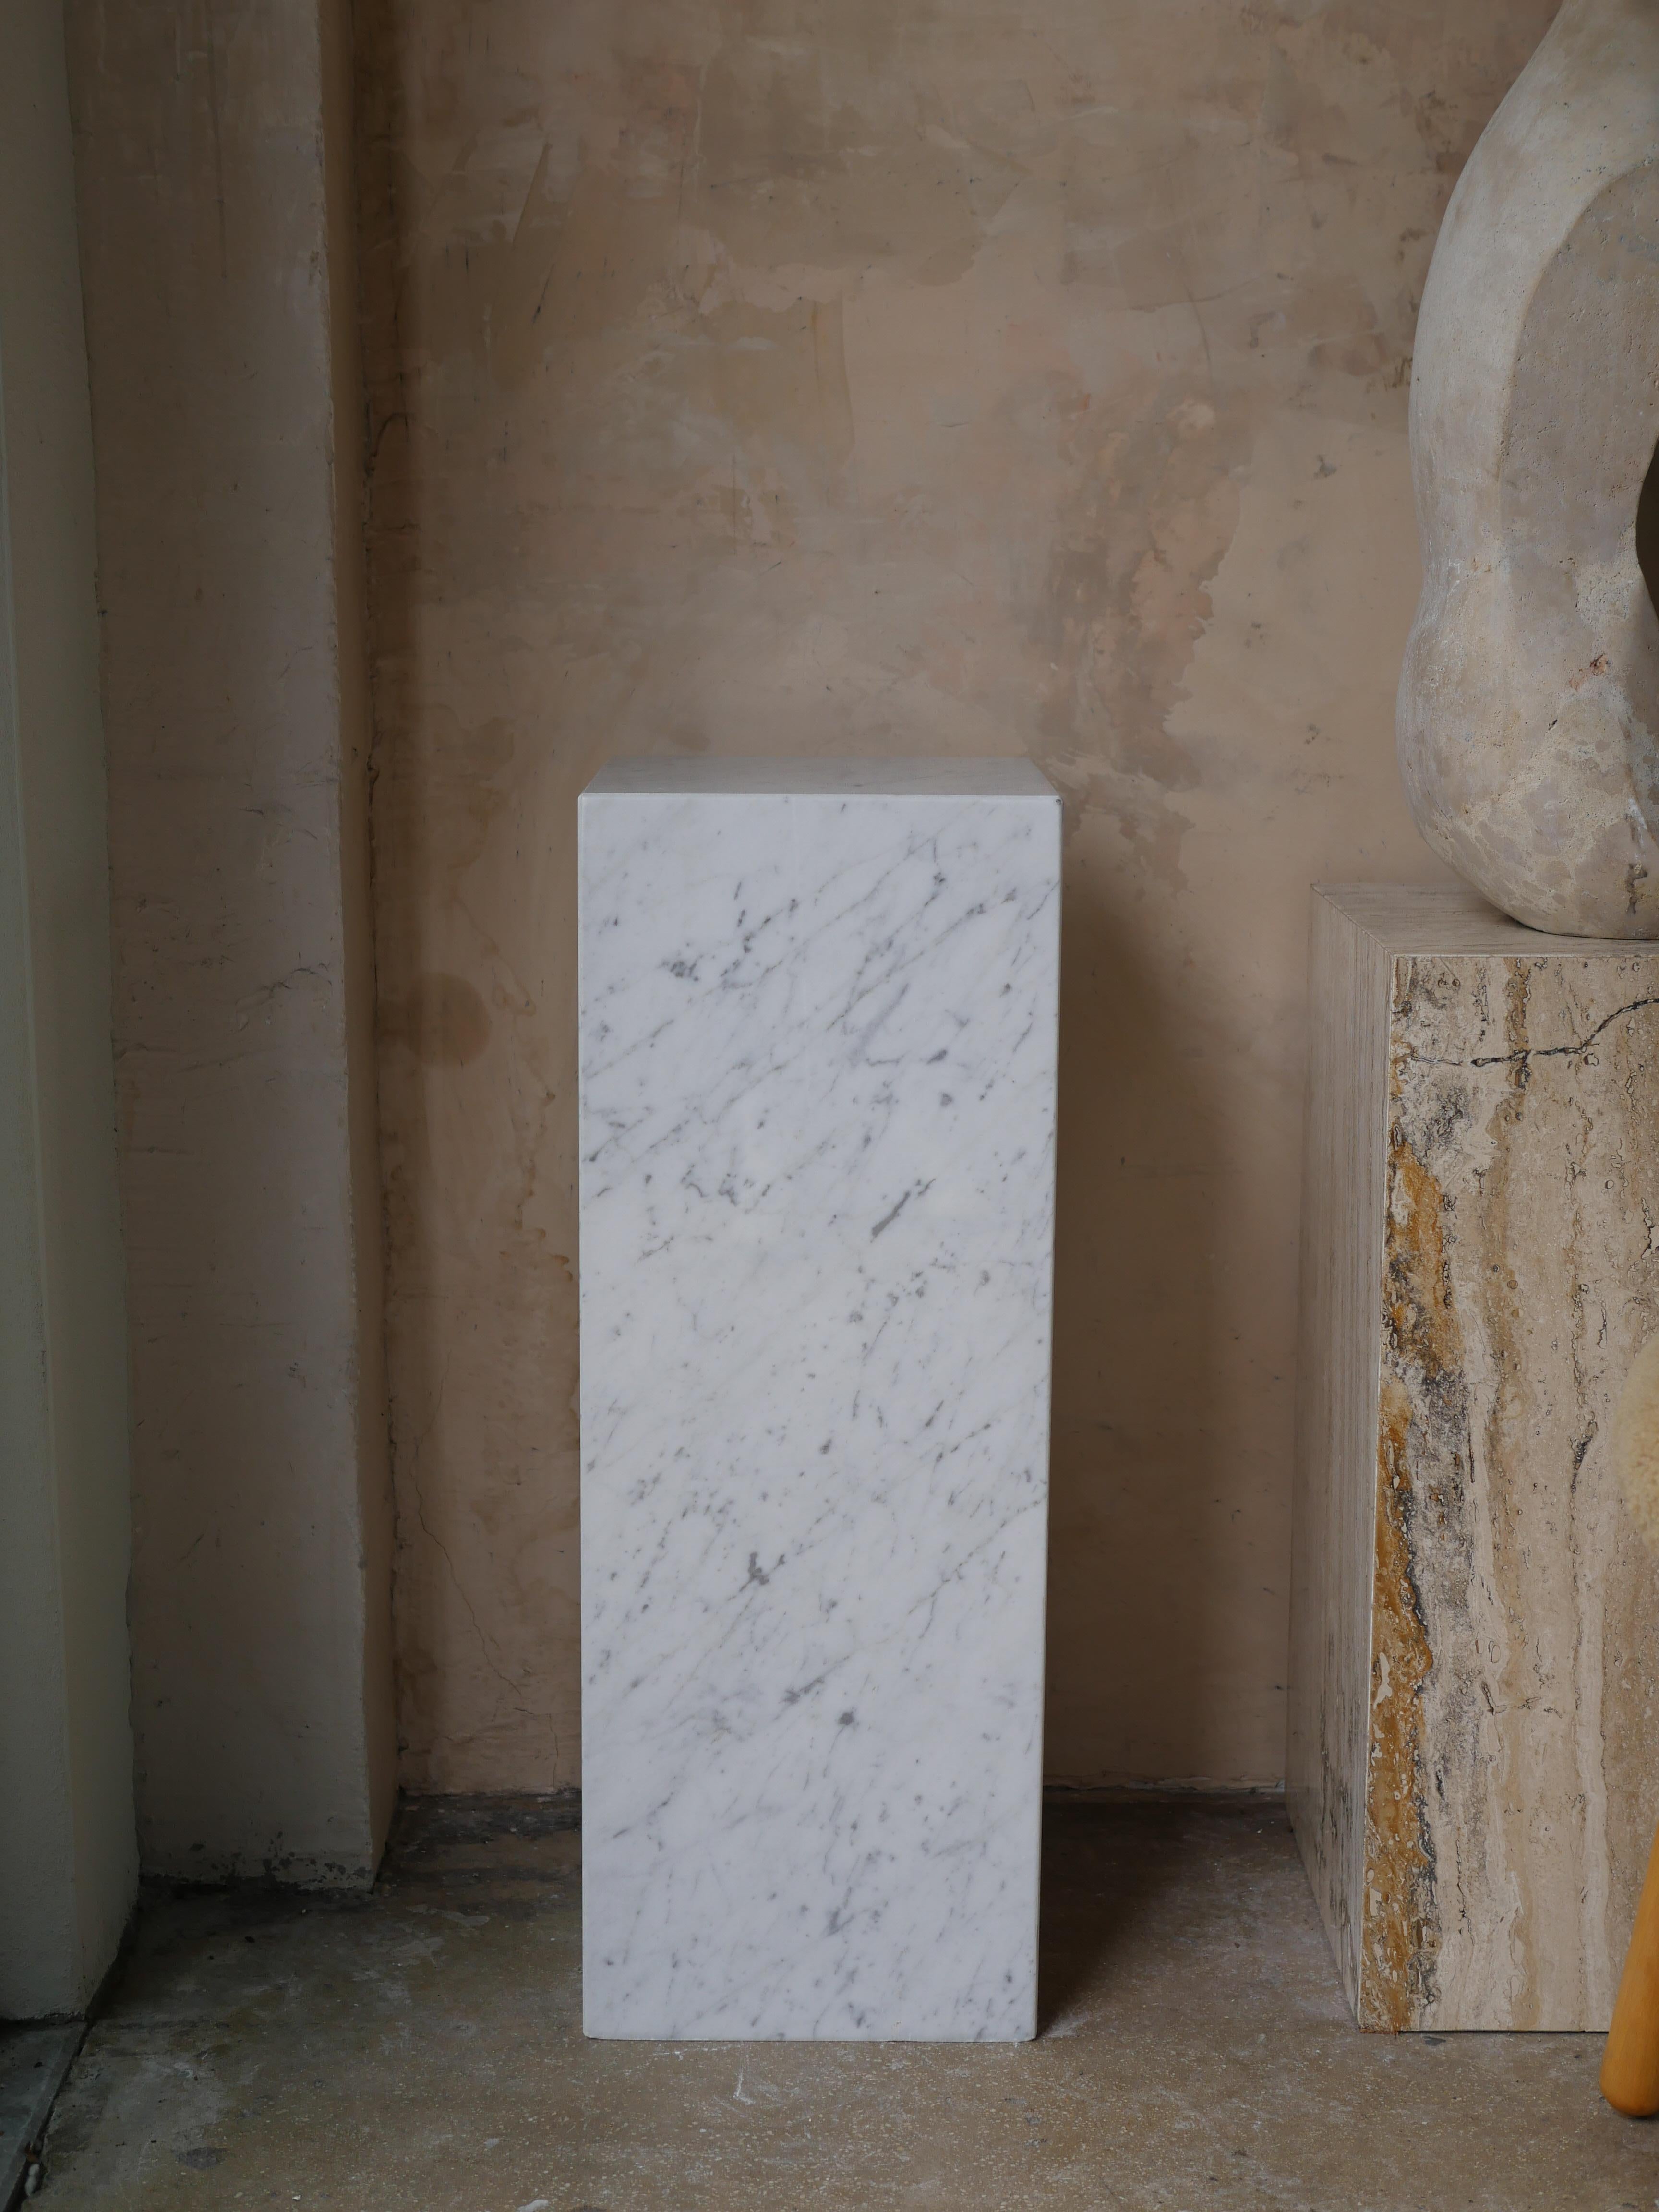 Elegant piédestal moderne en marbre italien de Carrare, fabriqué sur mesure. Ce magnifique piédestal est parfait pour ajouter une hauteur variable à votre espace, tout en fournissant un ajout étonnant pour mettre en valeur vos sculptures avec style.